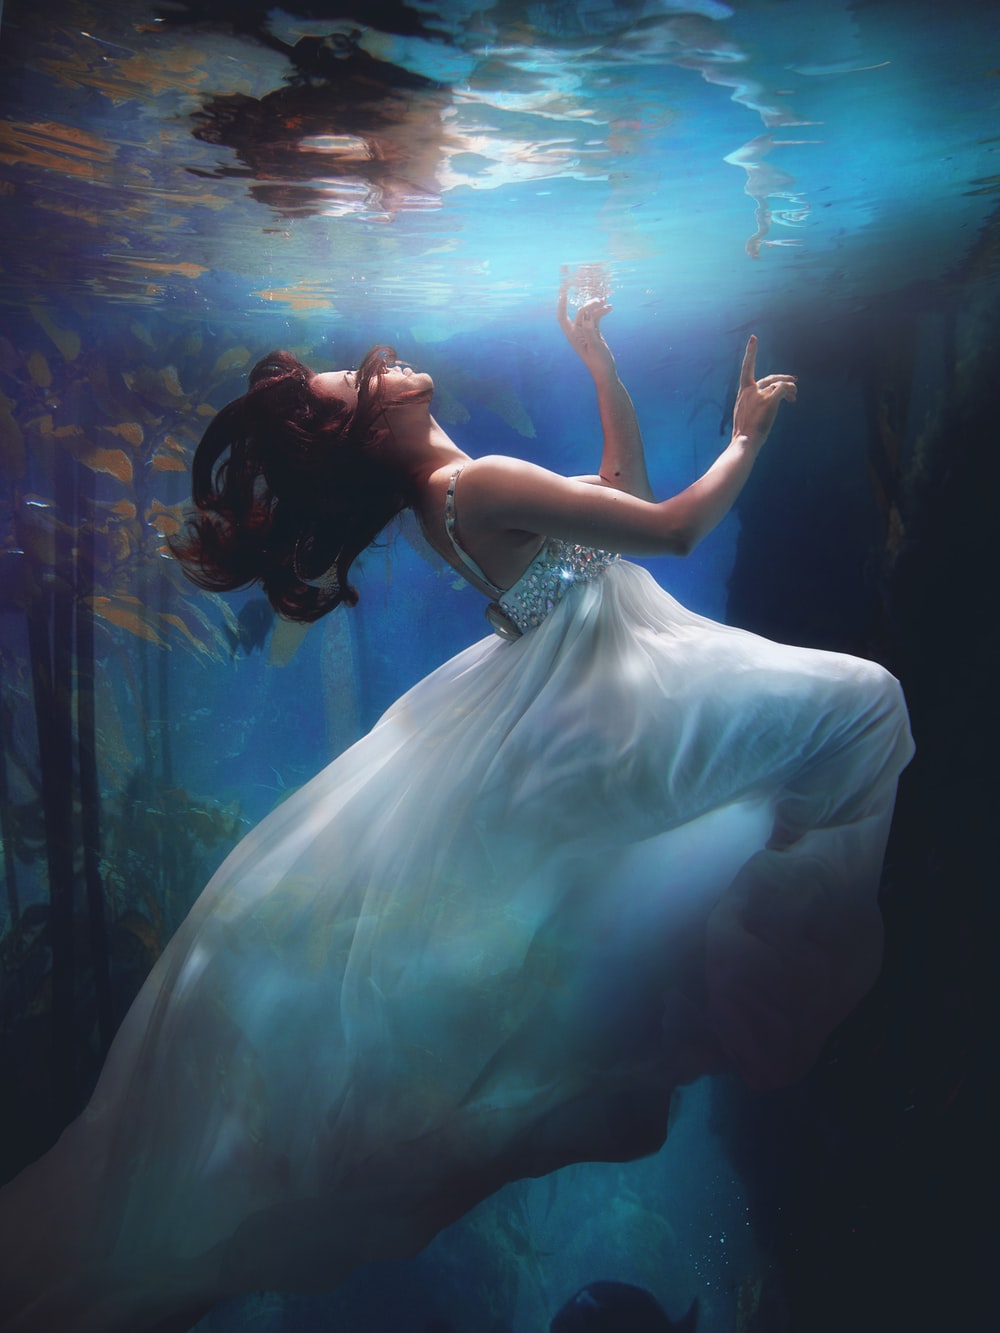 Surreal Women Under Water Wallpapers